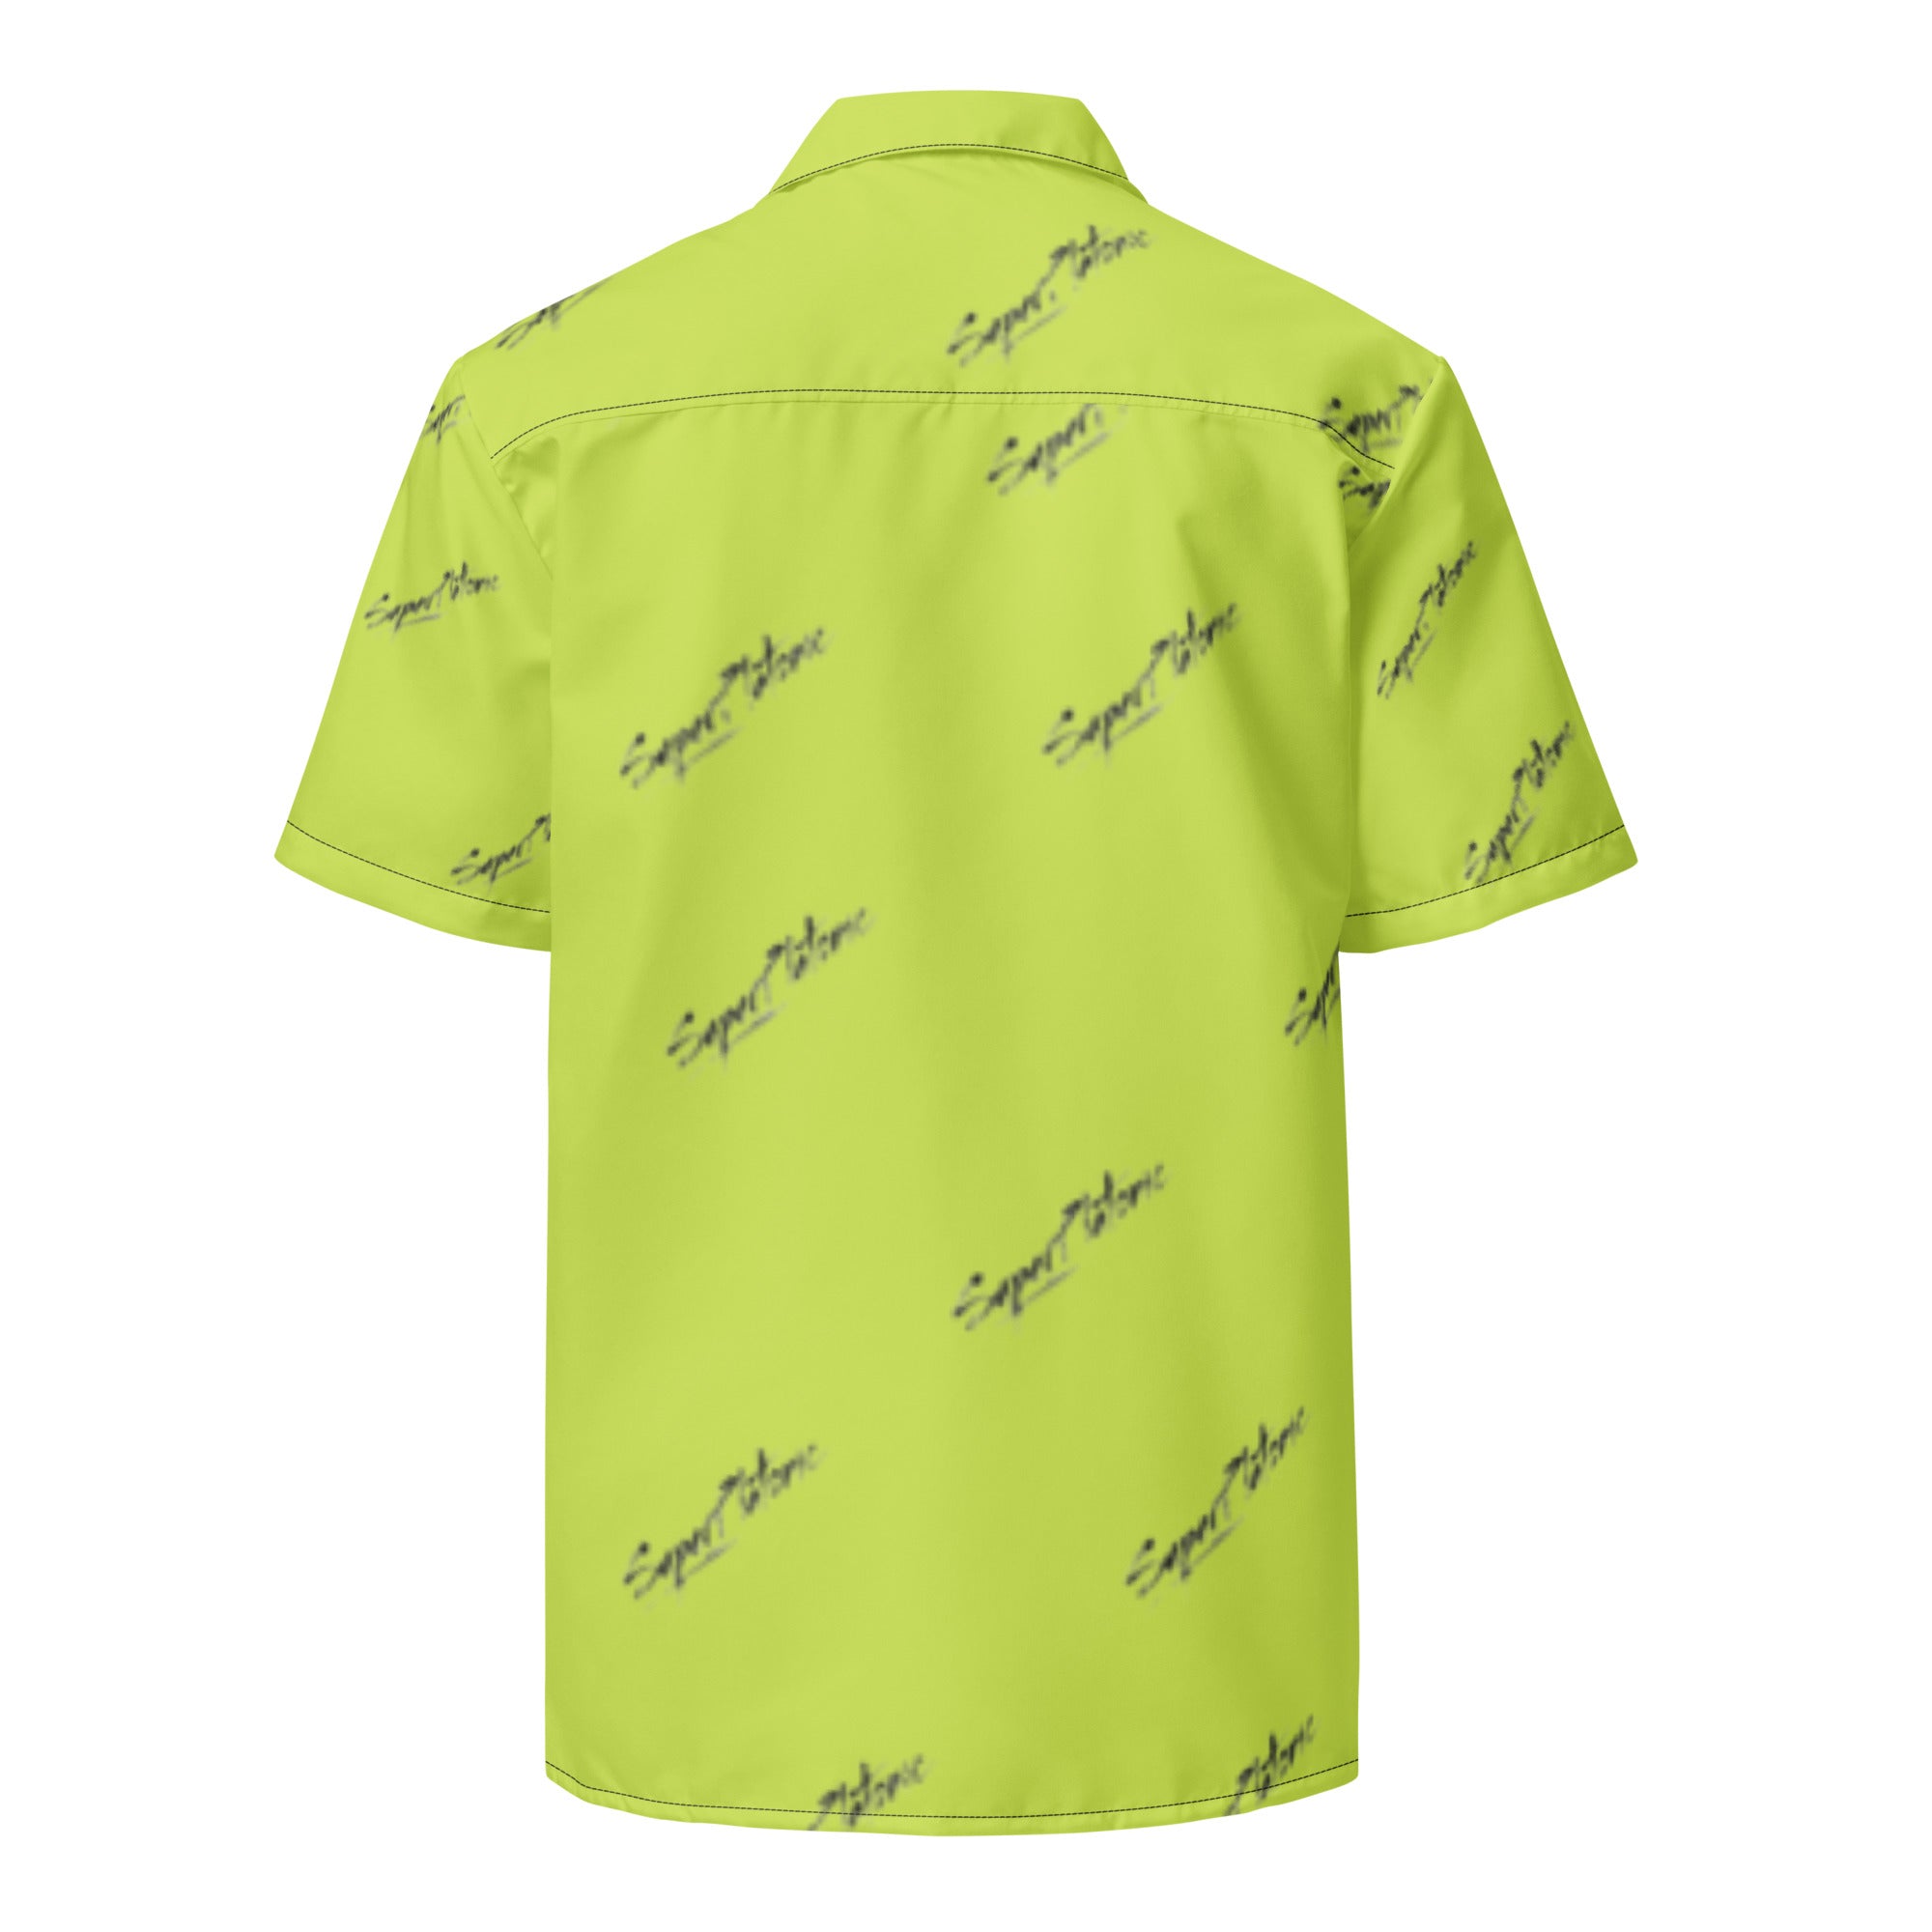 Dapper Button-Up Shirt "Green Apple"